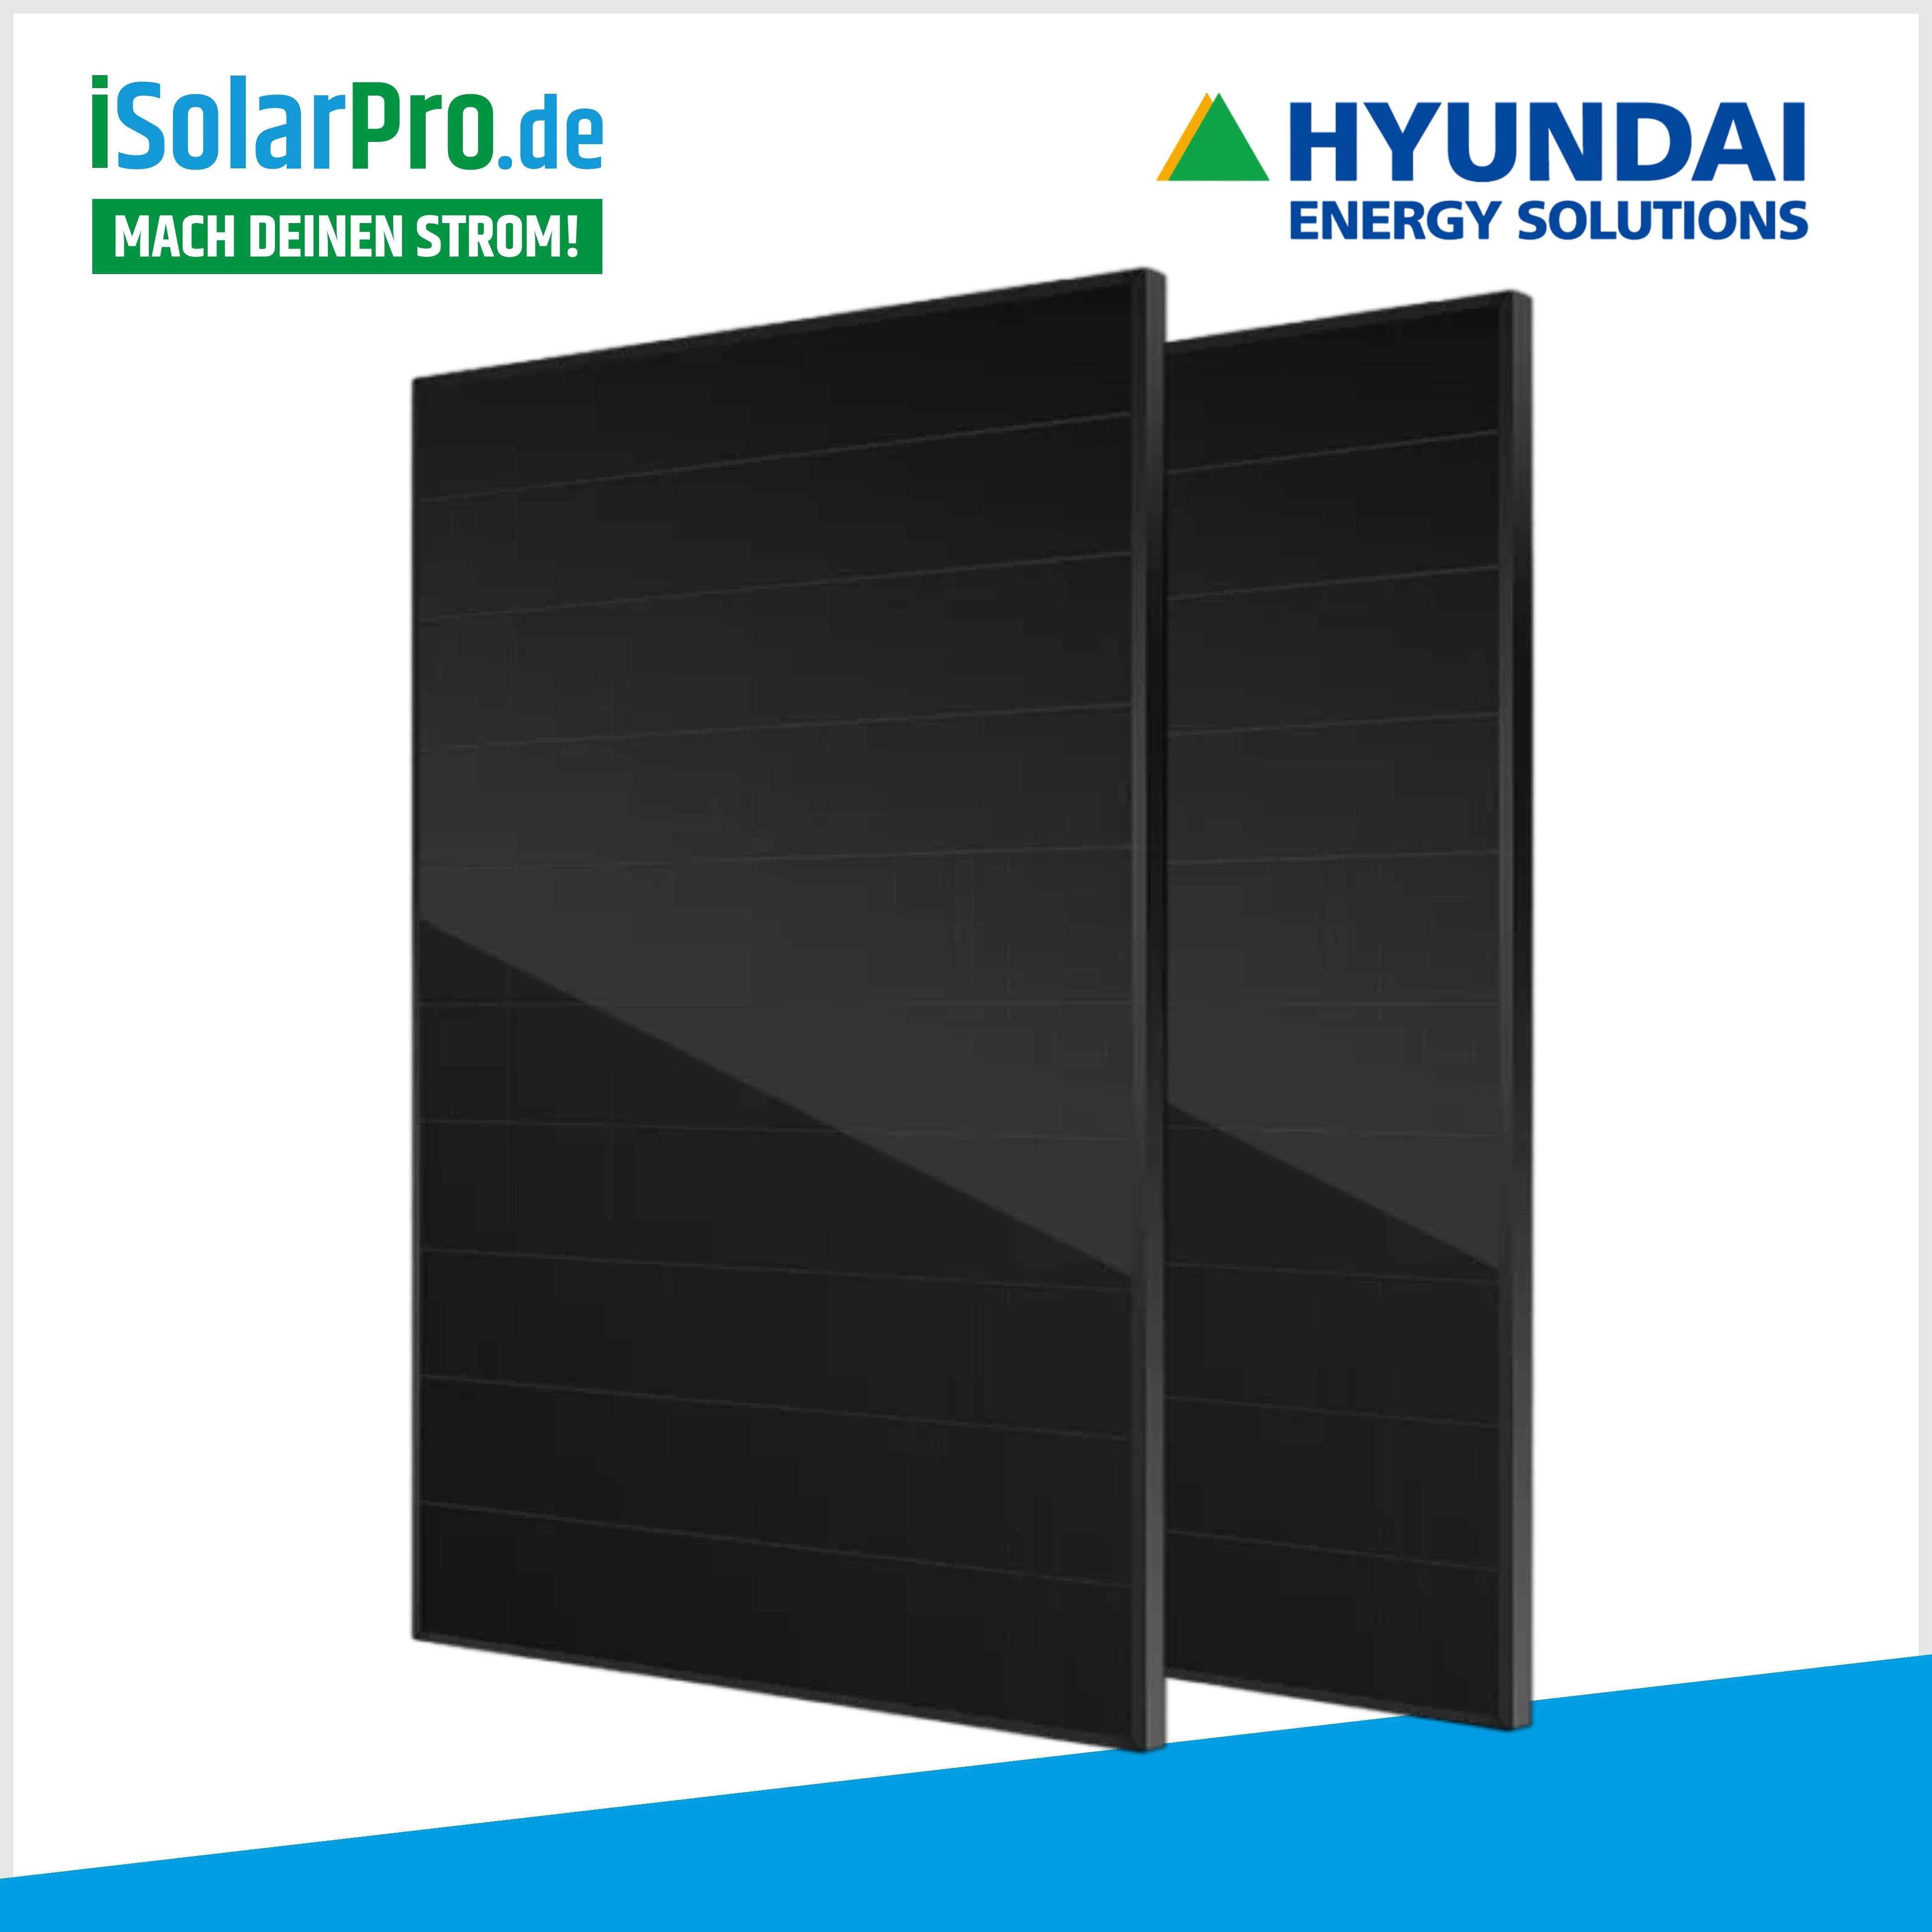 12 kW PV-Anlage Set 29x 415W HYUNDAI Solarmodule + 12 kW Deye Wechselrichter +6,14 kWh PV-Speicher Deye + Wallbox zappi